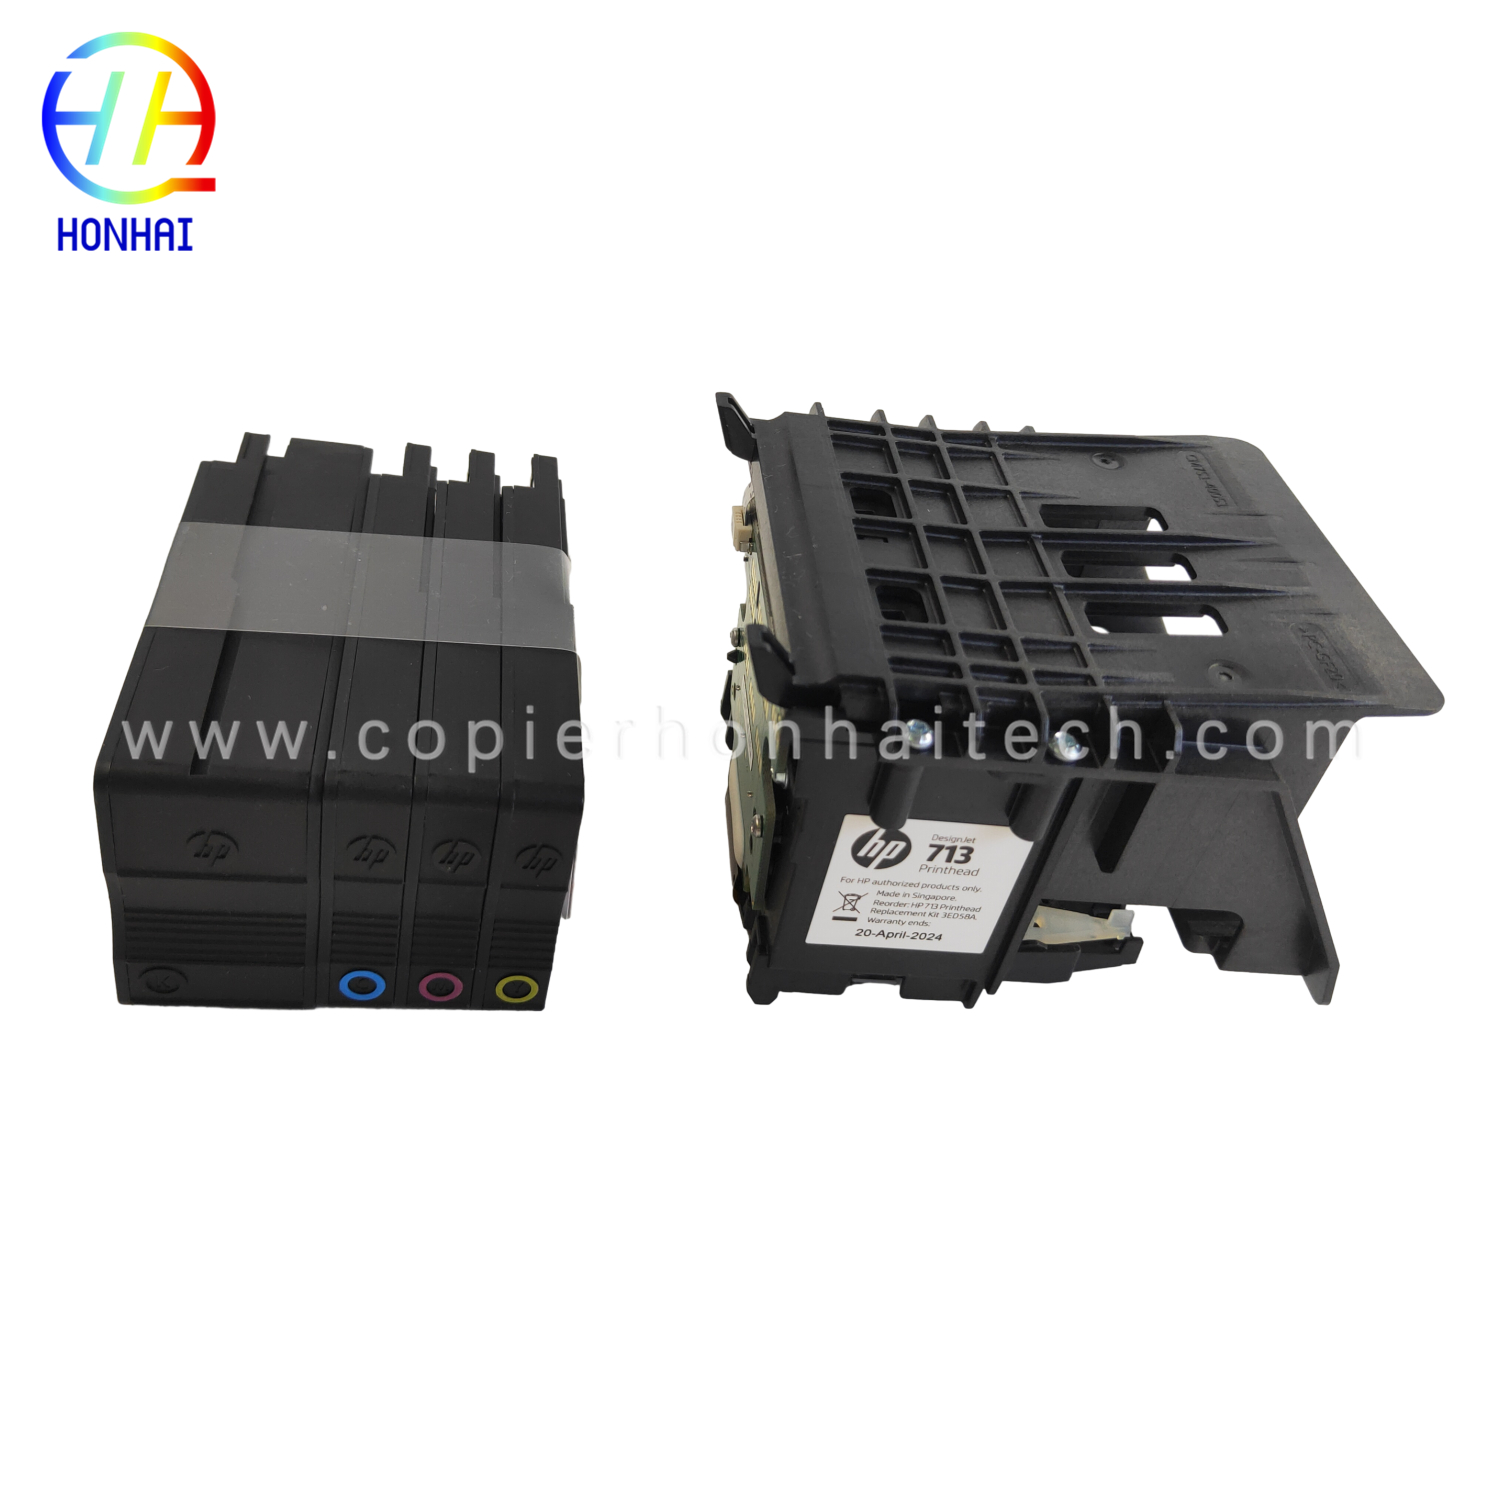 https://www.copierhonhaitech.com/origen-new-designjet-printhead-replacement-kit-3ed58a-for-hp-713-designjet-t650-t630-t230-t210-studio-plotter-printers-black-product/